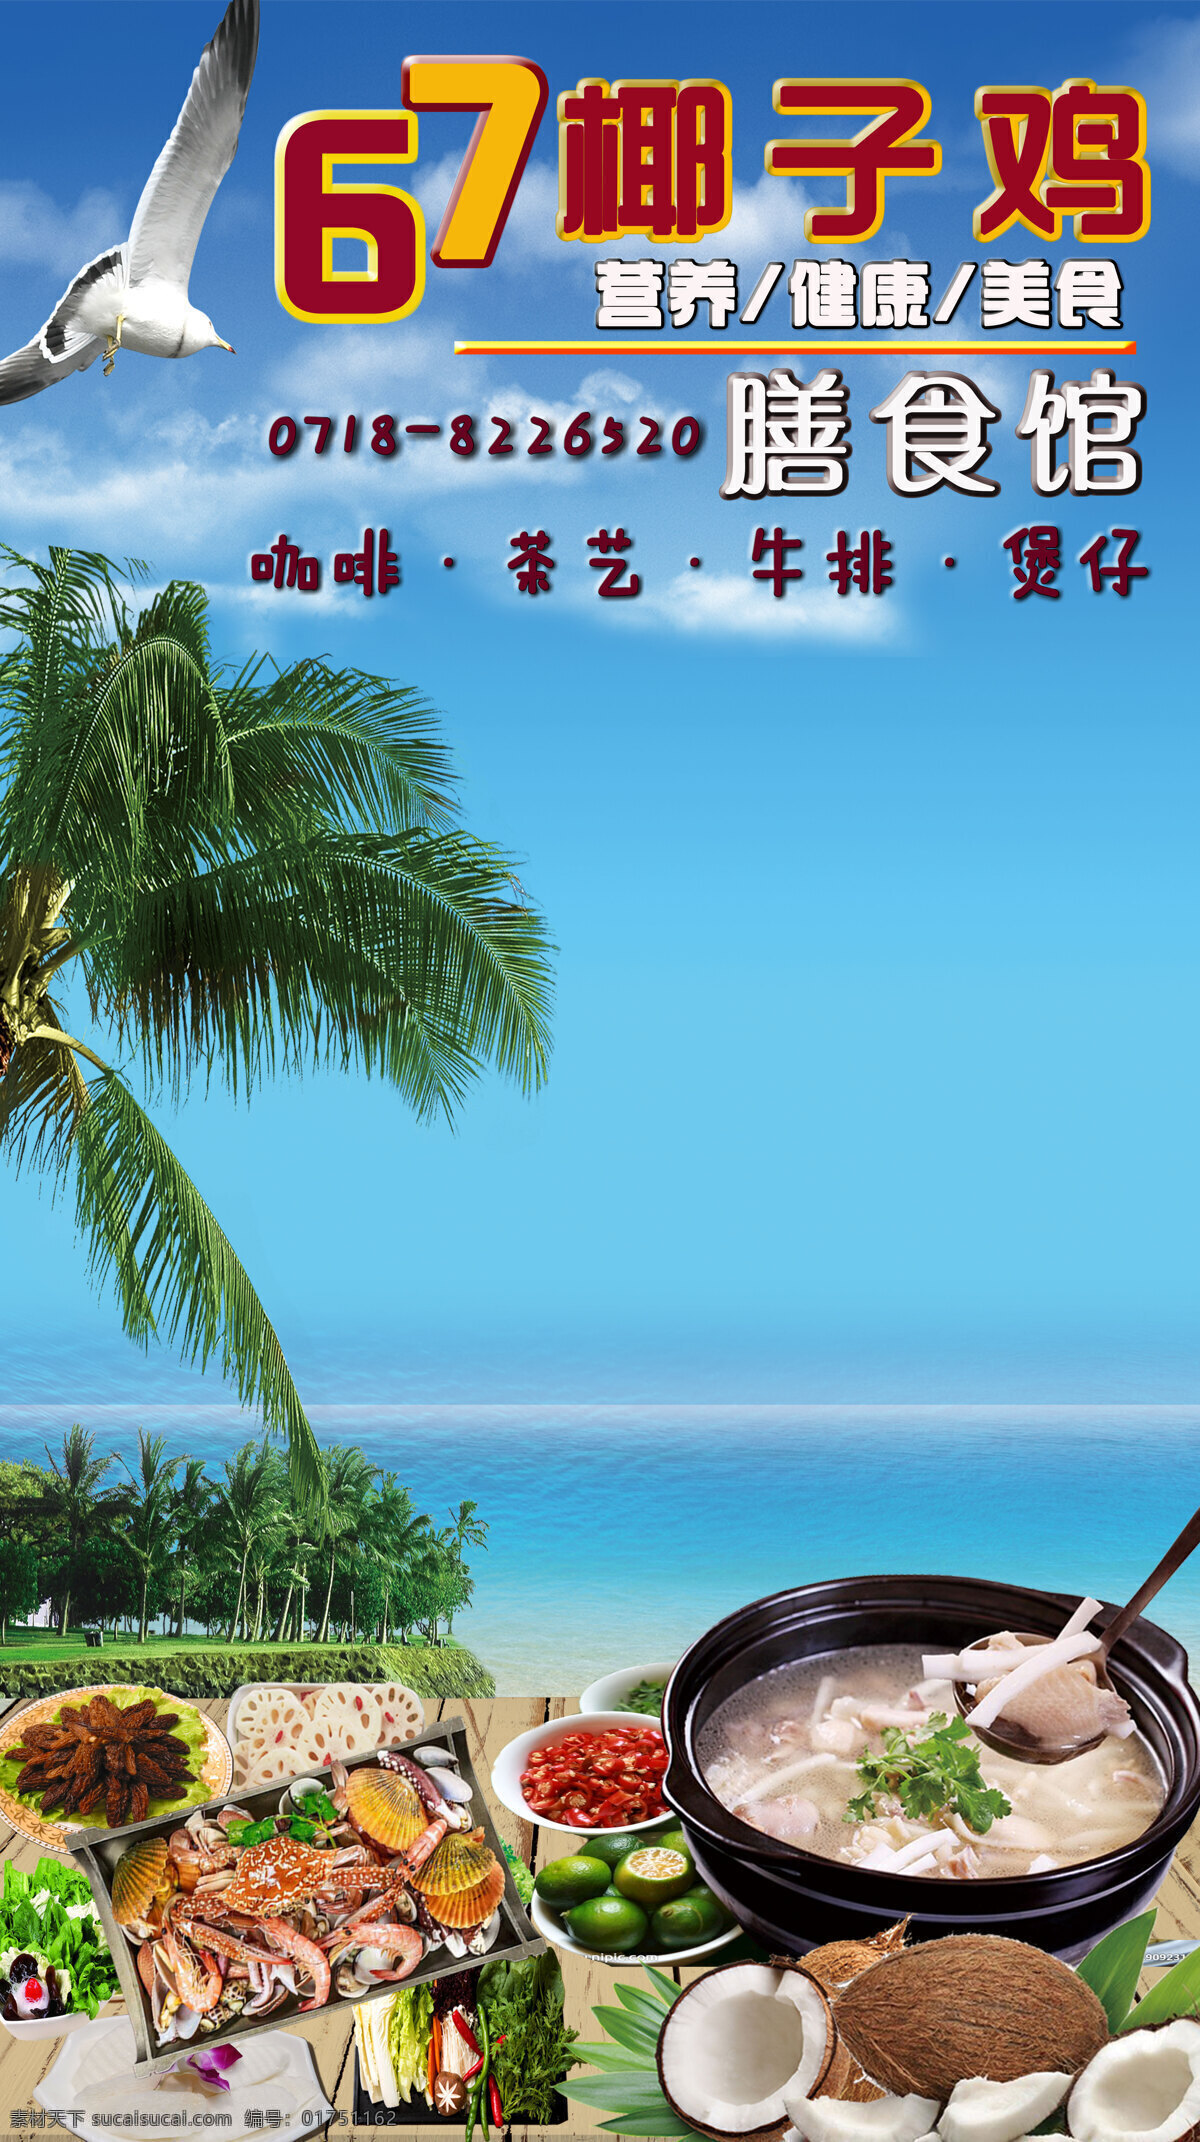 椰子鸡图片 椰子鸡 海滩 火锅 美食 海岛 海鲜